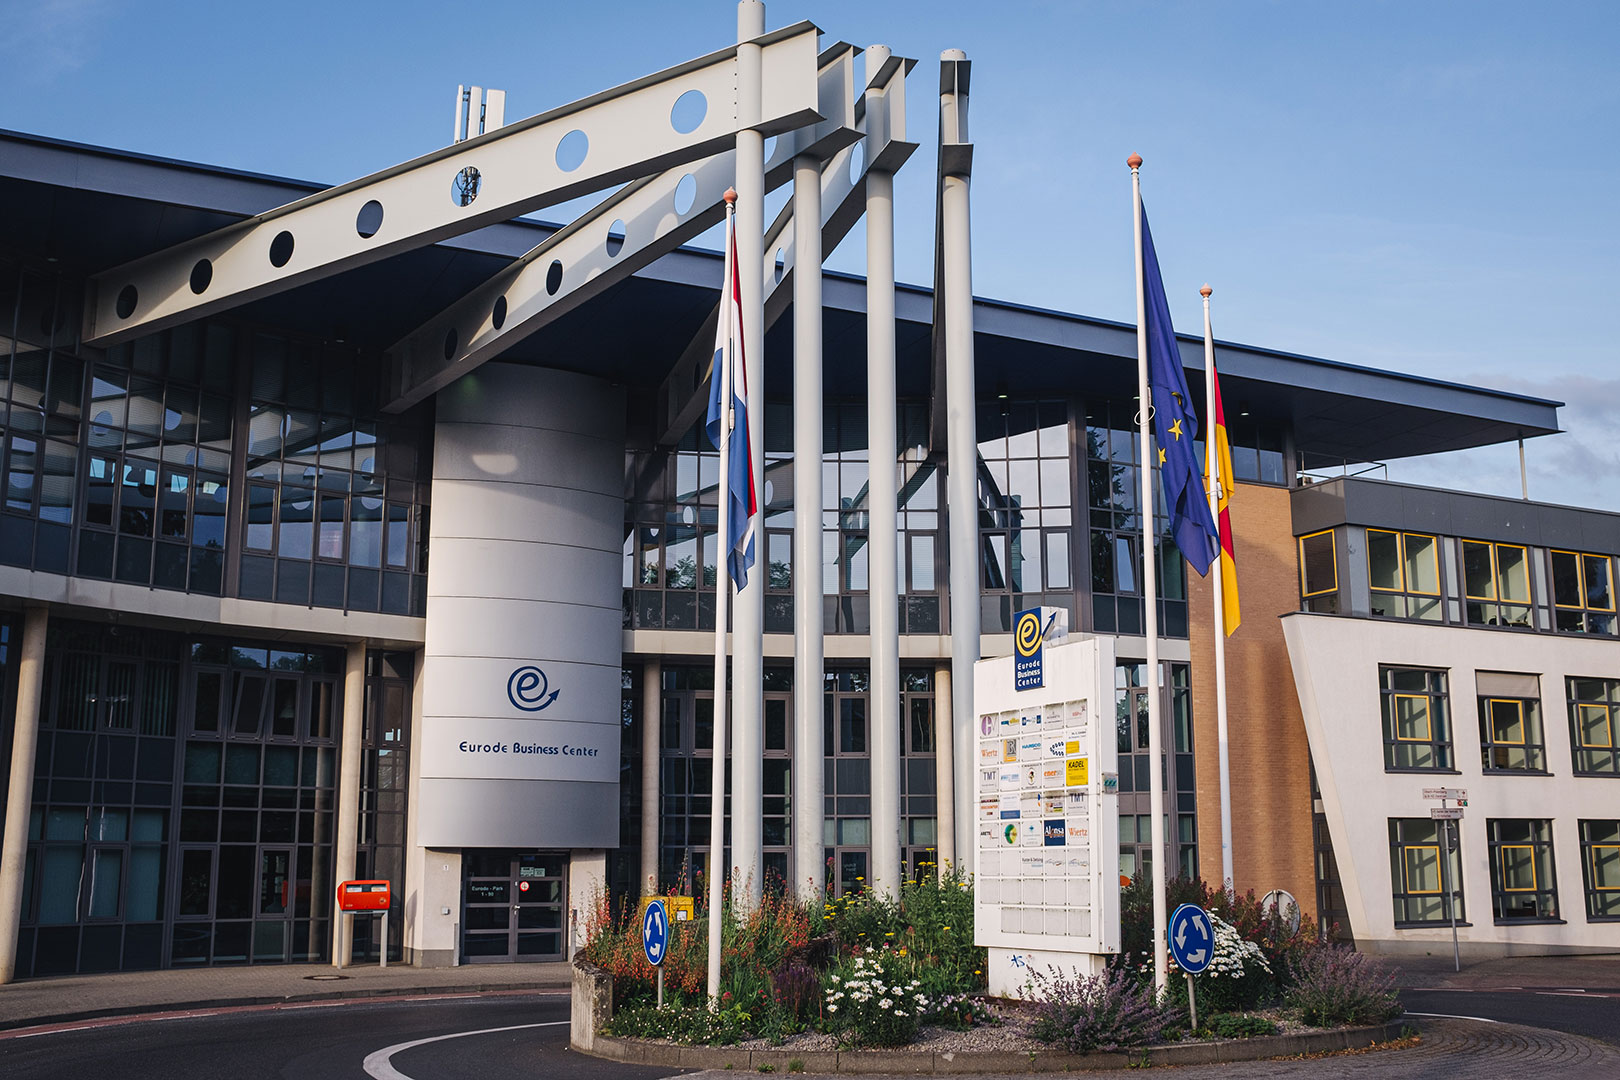 Eurode Business Center